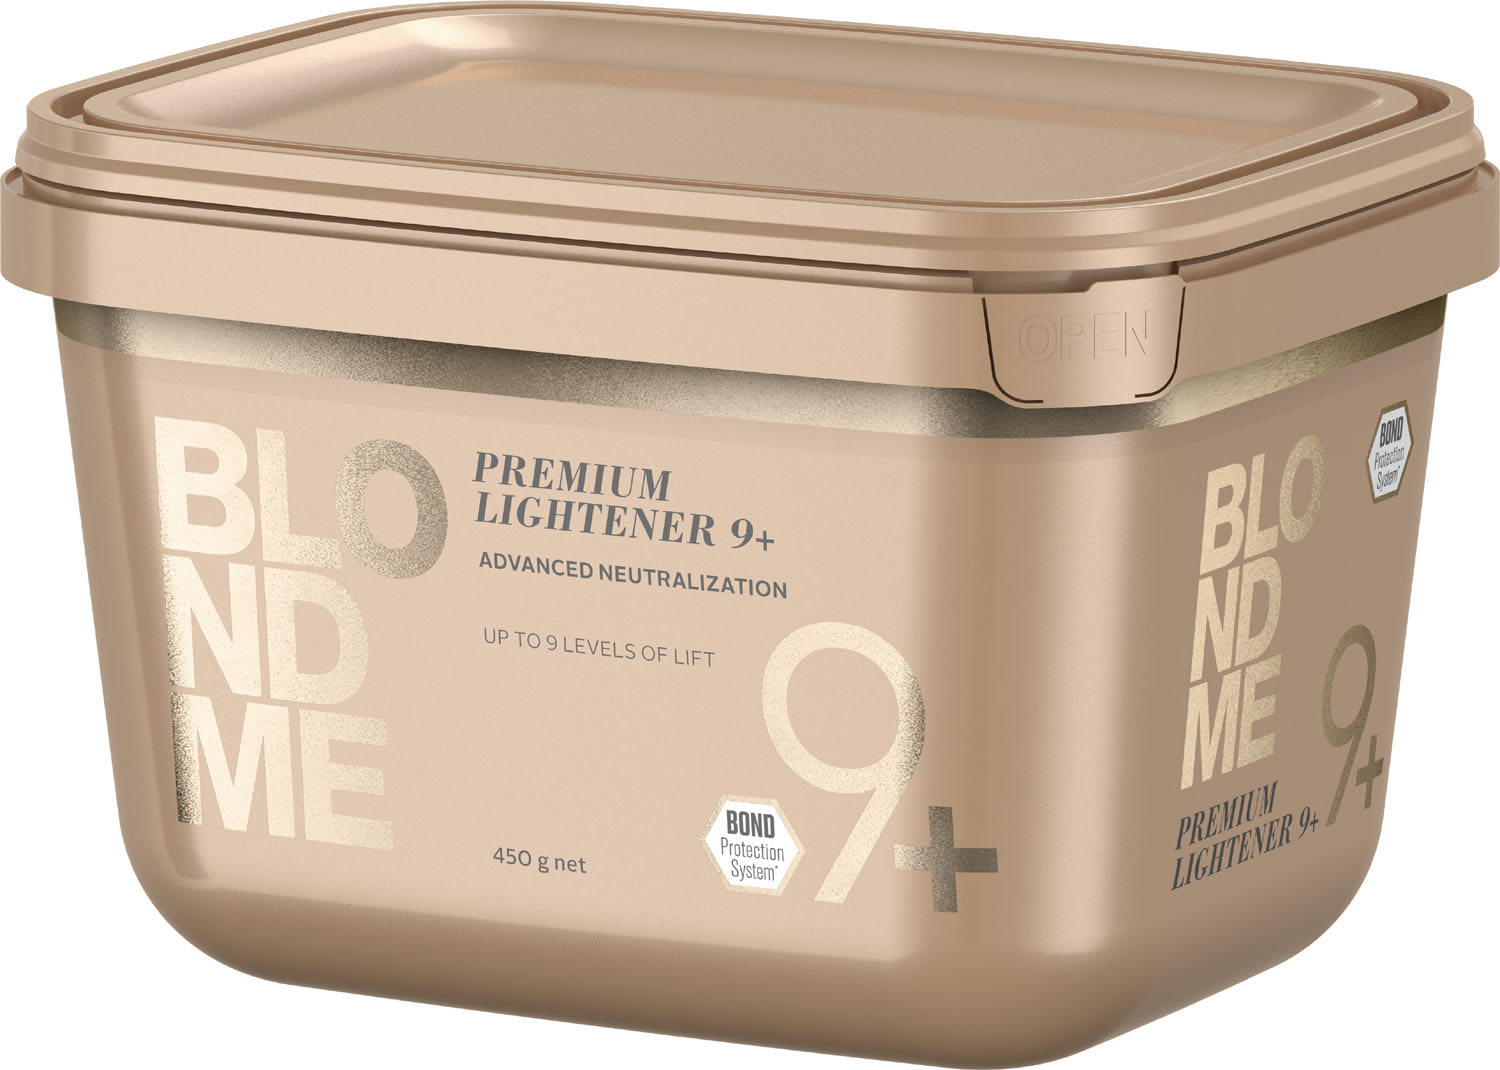  Schwarzkopf BLONDME Premium Lightener 9+ 450 g 